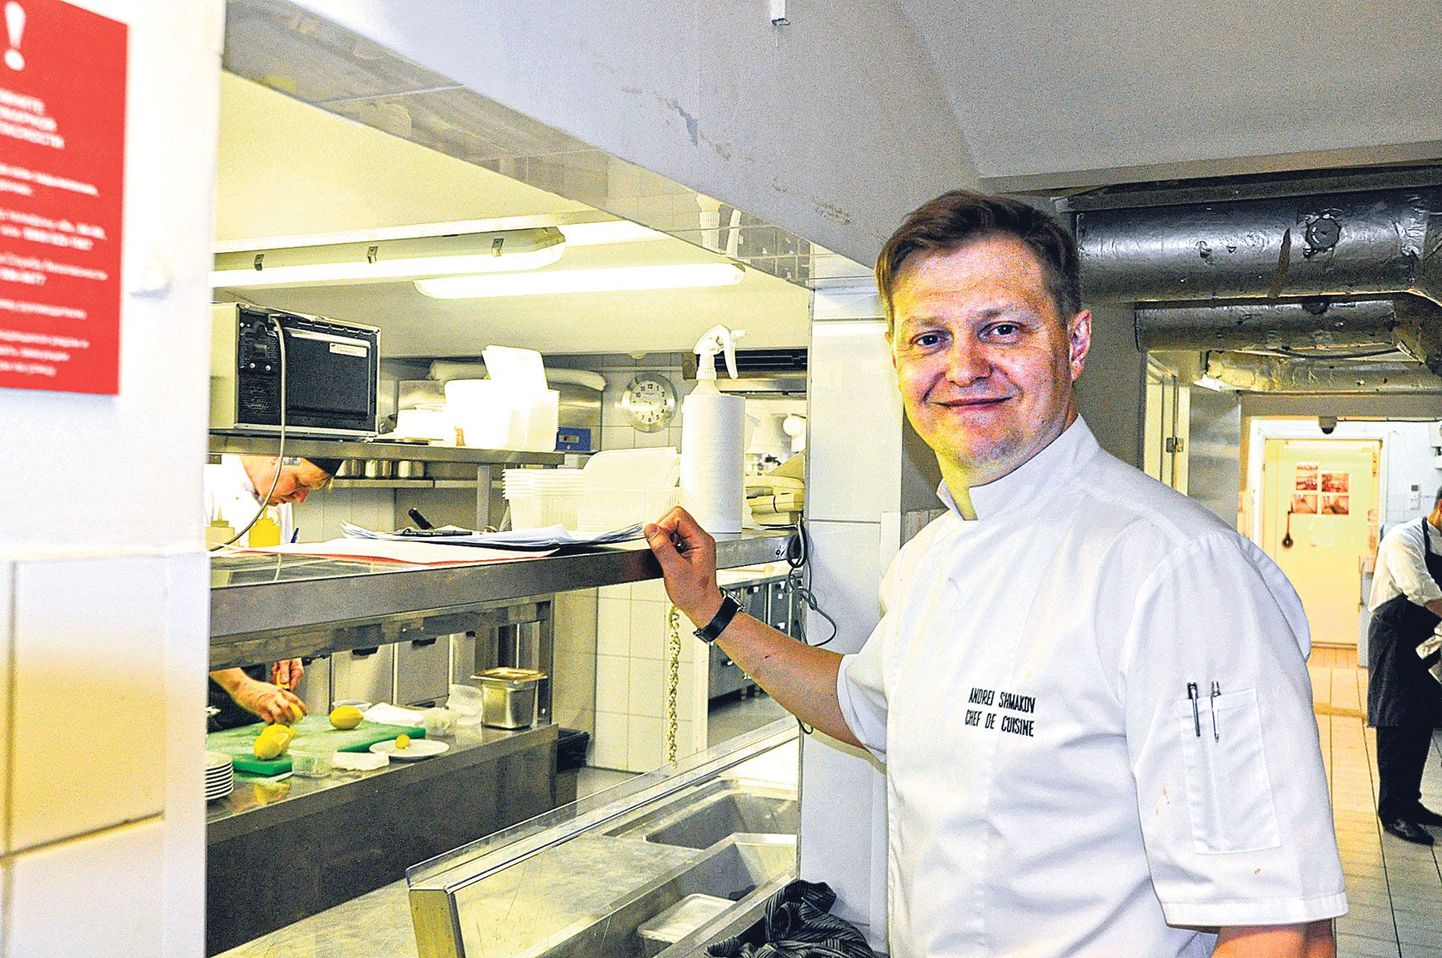 Известный шеф-повар из Эстонии Андрей Шмаков в меню своего ресторана «Савва» соединяет славянские кулинарные традиции со своеобразием кухни Северных стран.